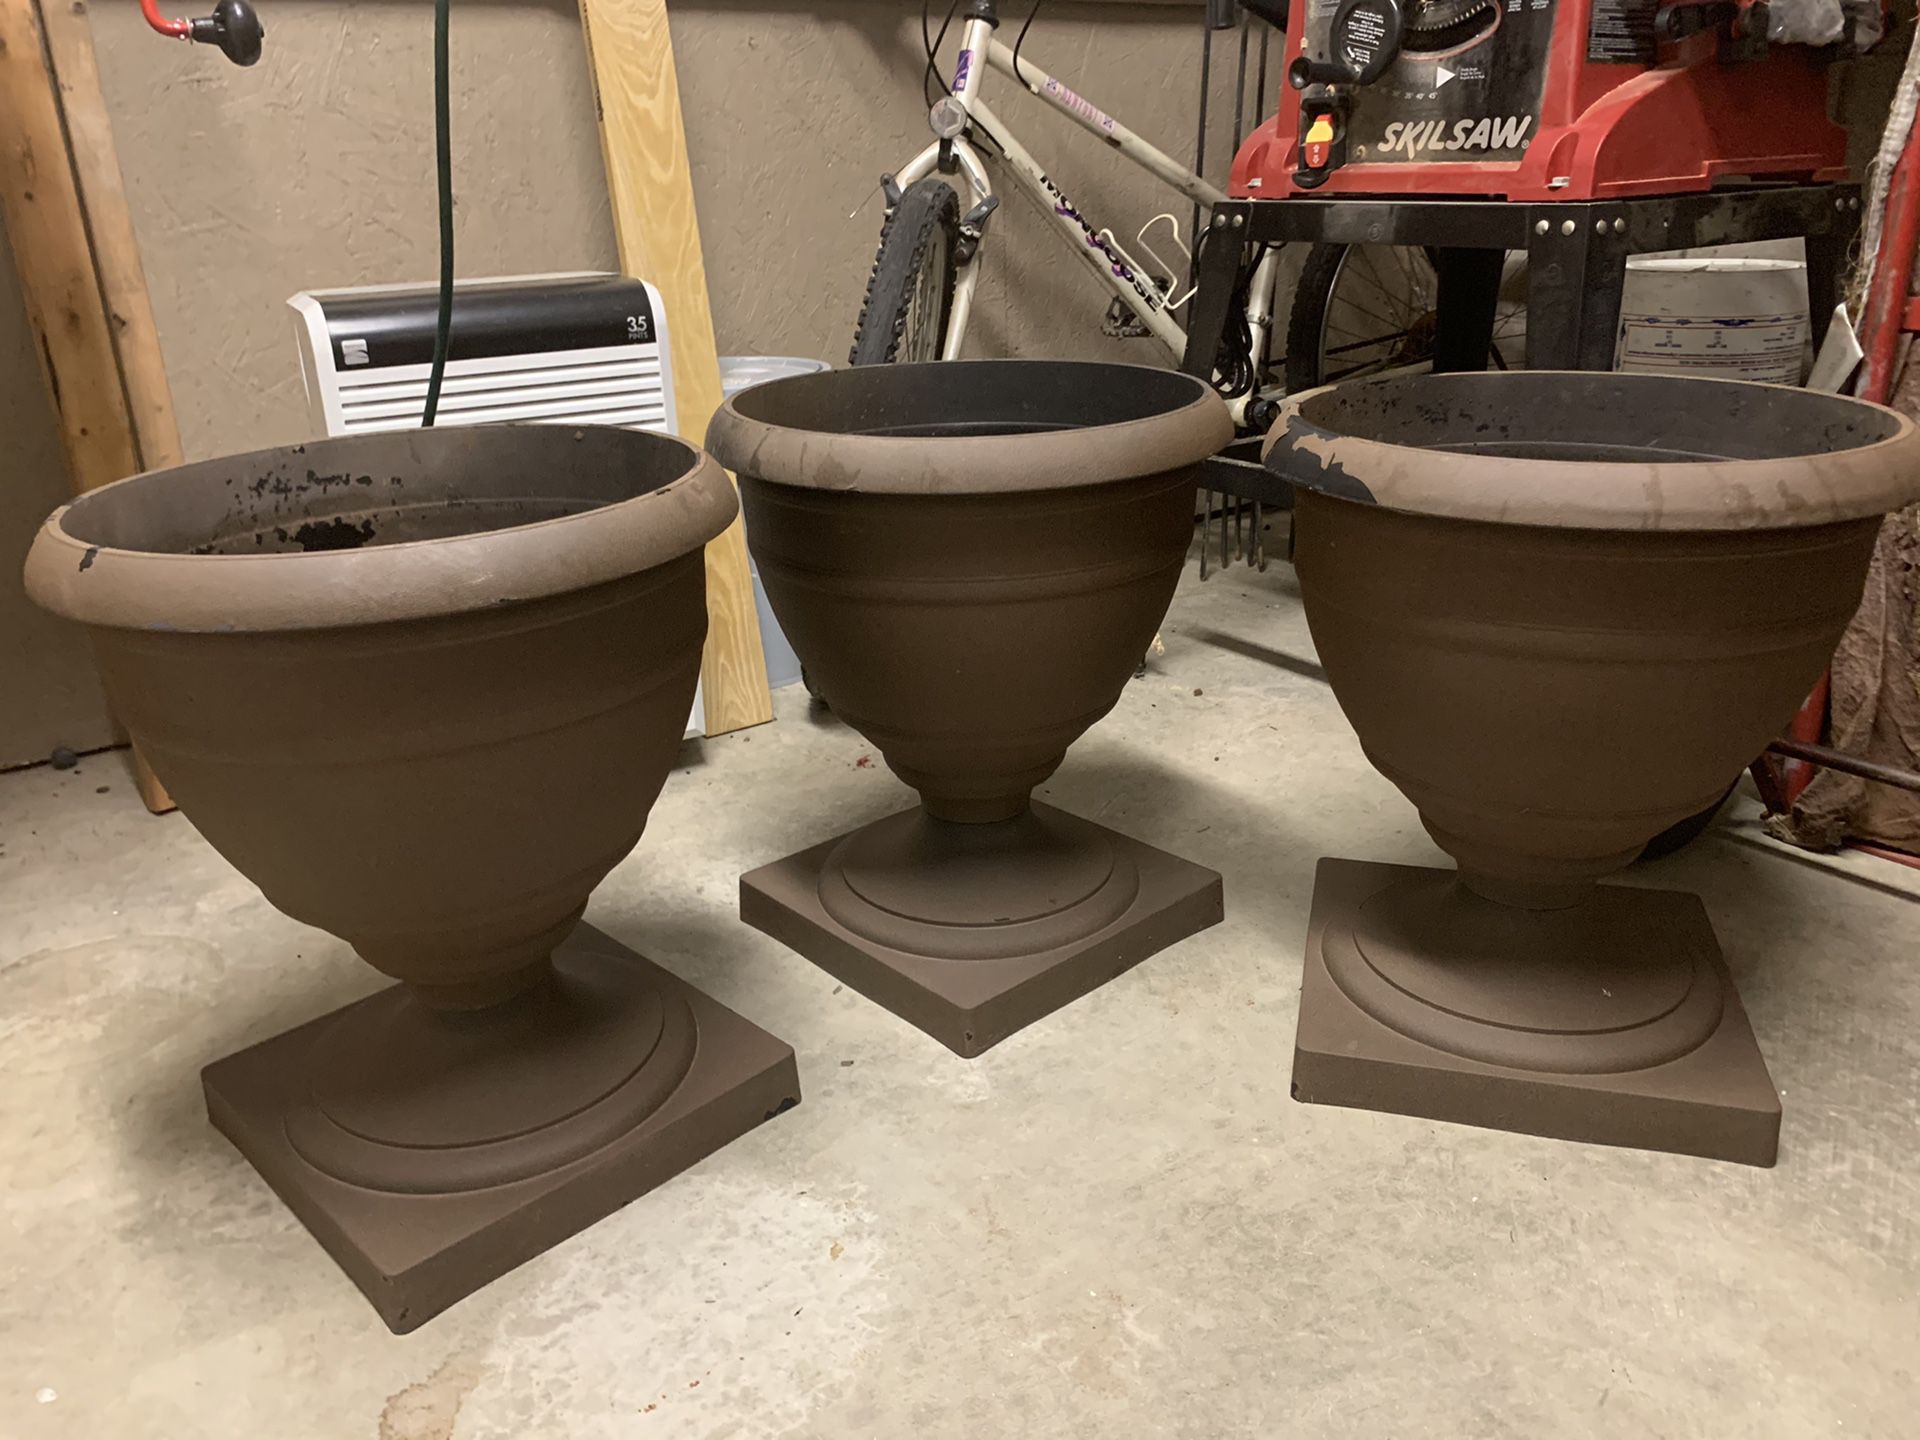 3 outside pots